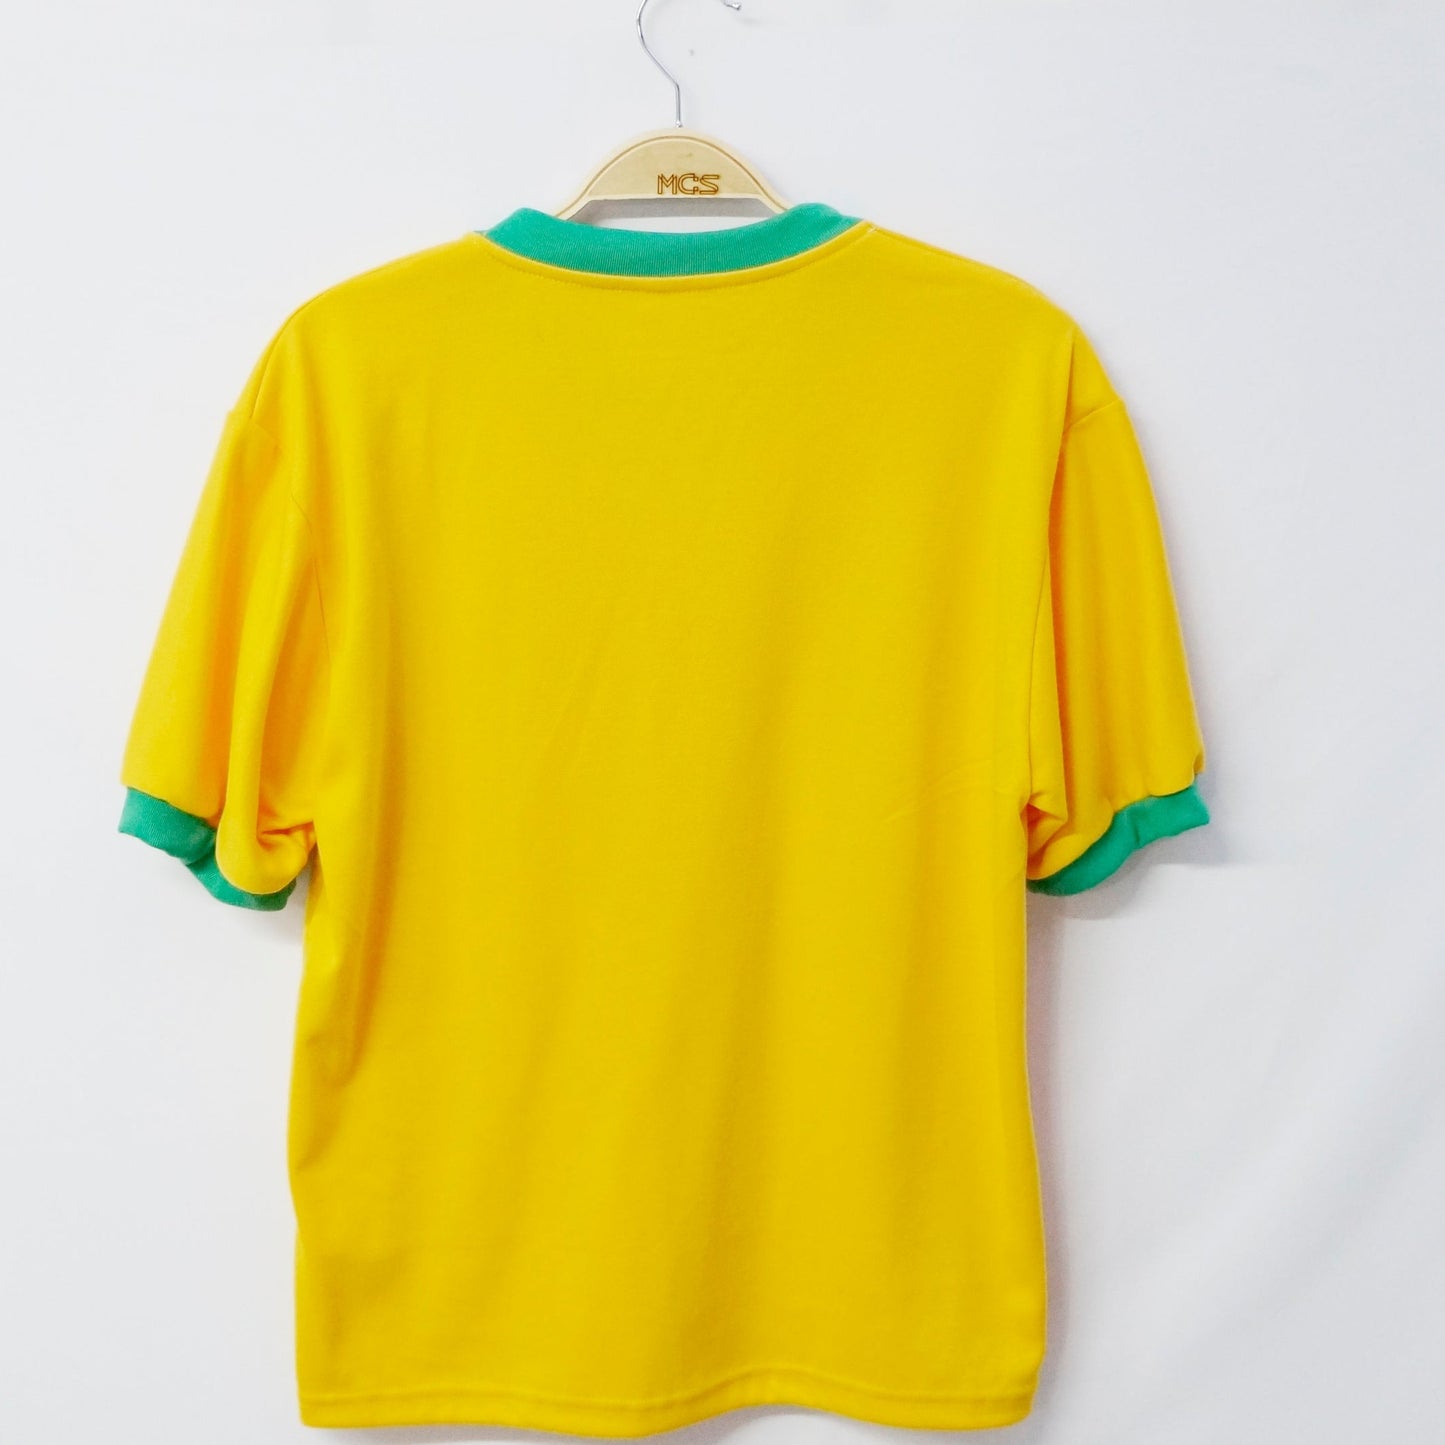 Pele Brazil 1970 T-shirt